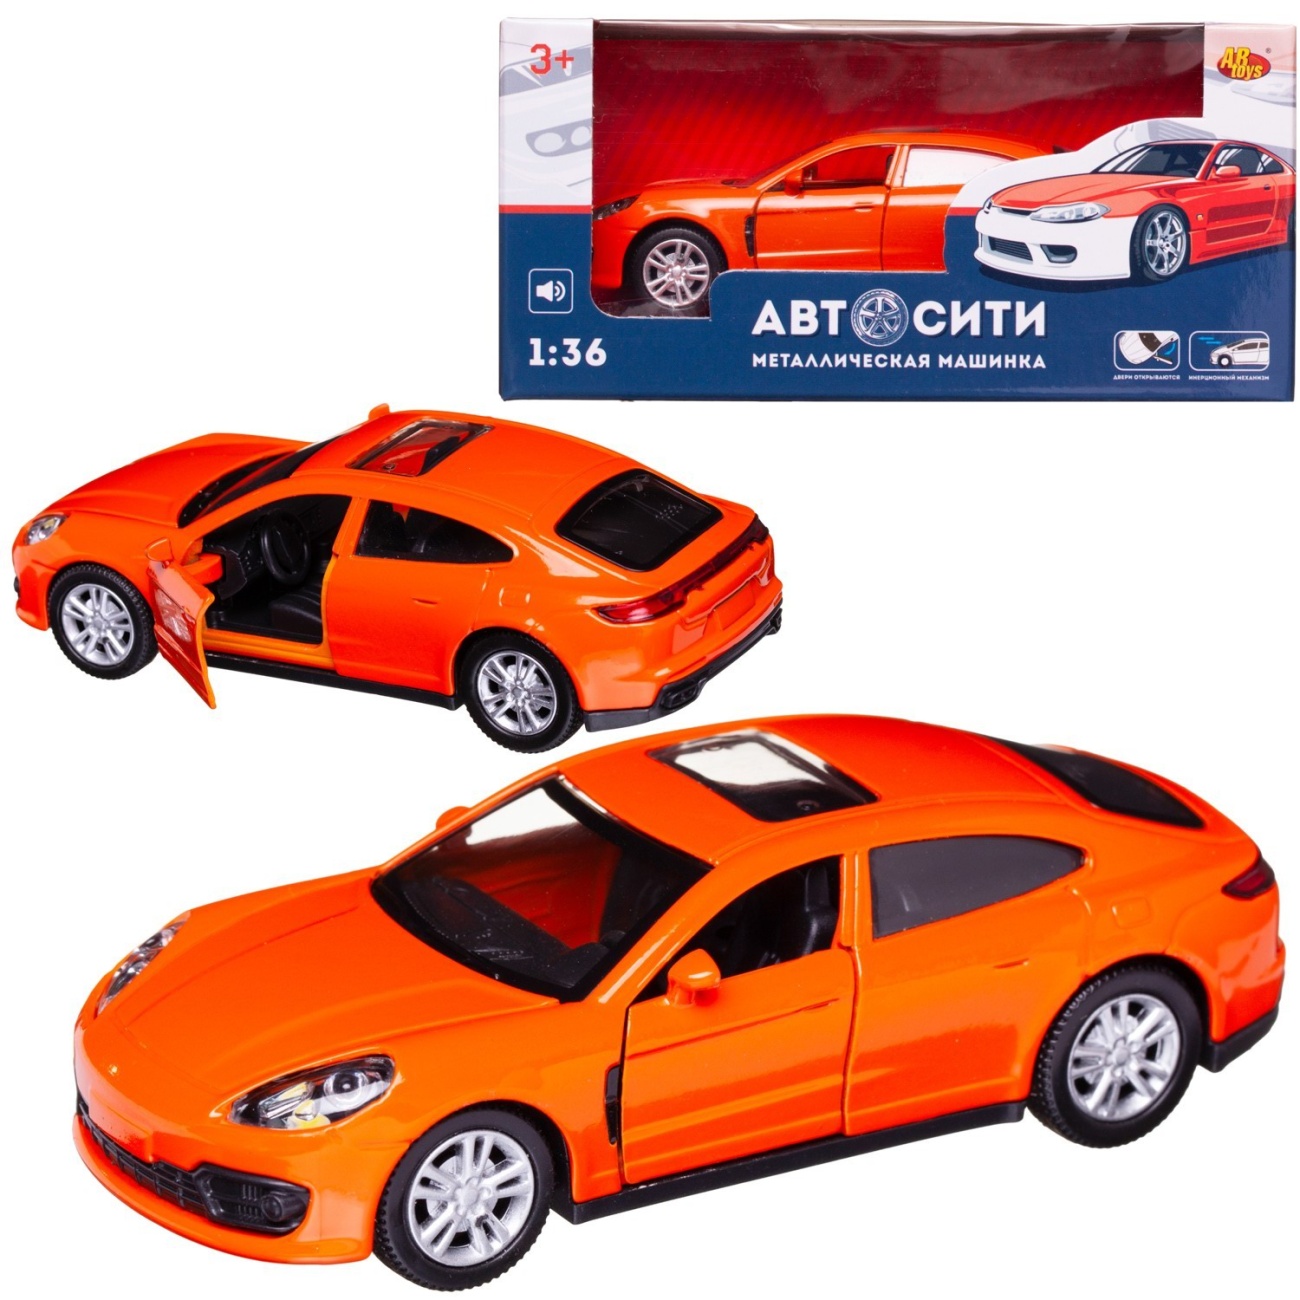 Машинка металл Abtoys АвтоСити 1:36 Седан купе инерция, двери откр., оранжевый свет/звук C-00523/оранжевый